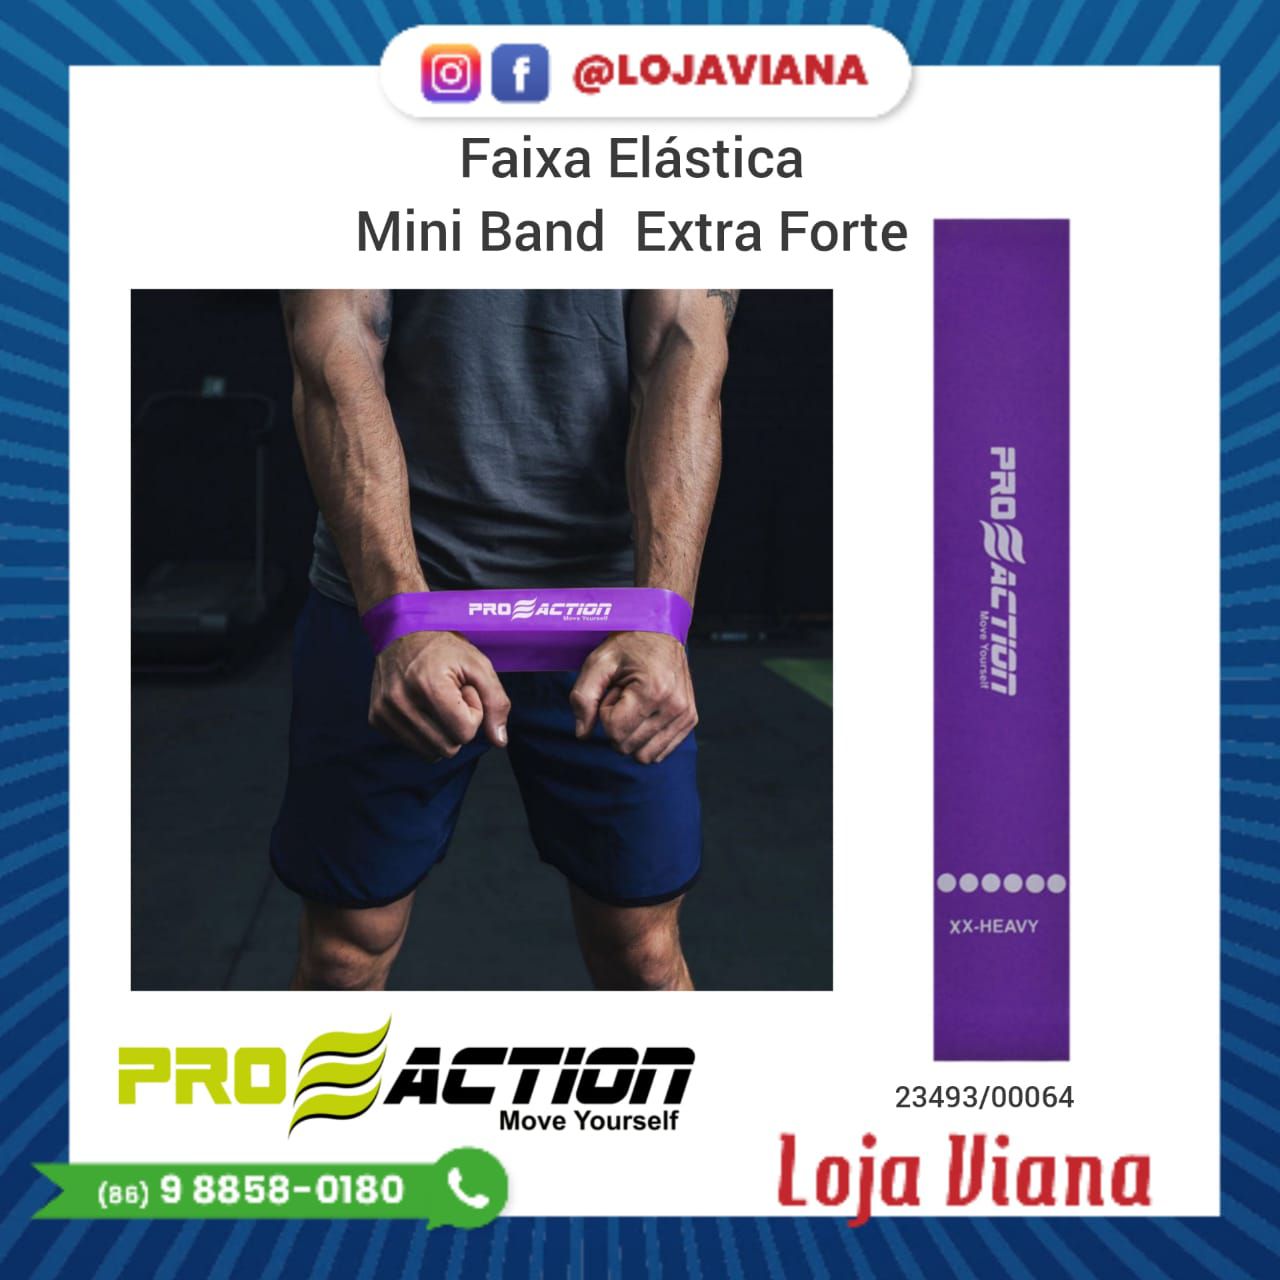 Faixa Elástica Mini Band Extra Forte - Loja Viana